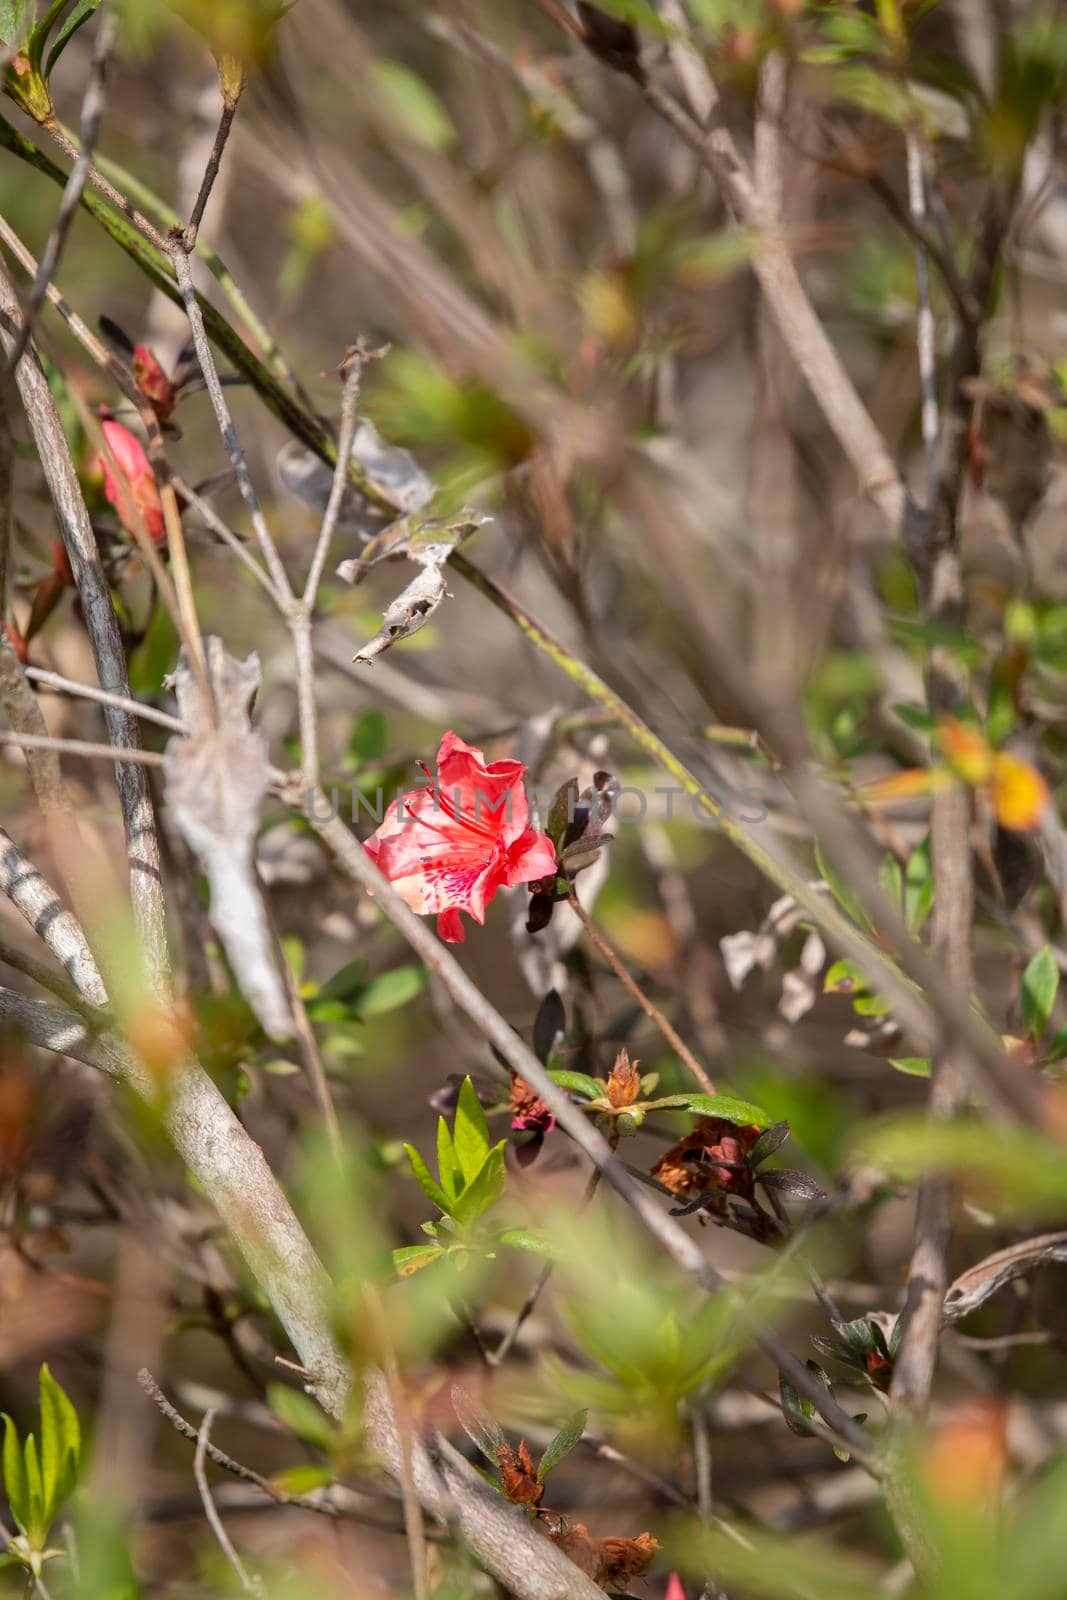 Red Flower Bloom by tornado98